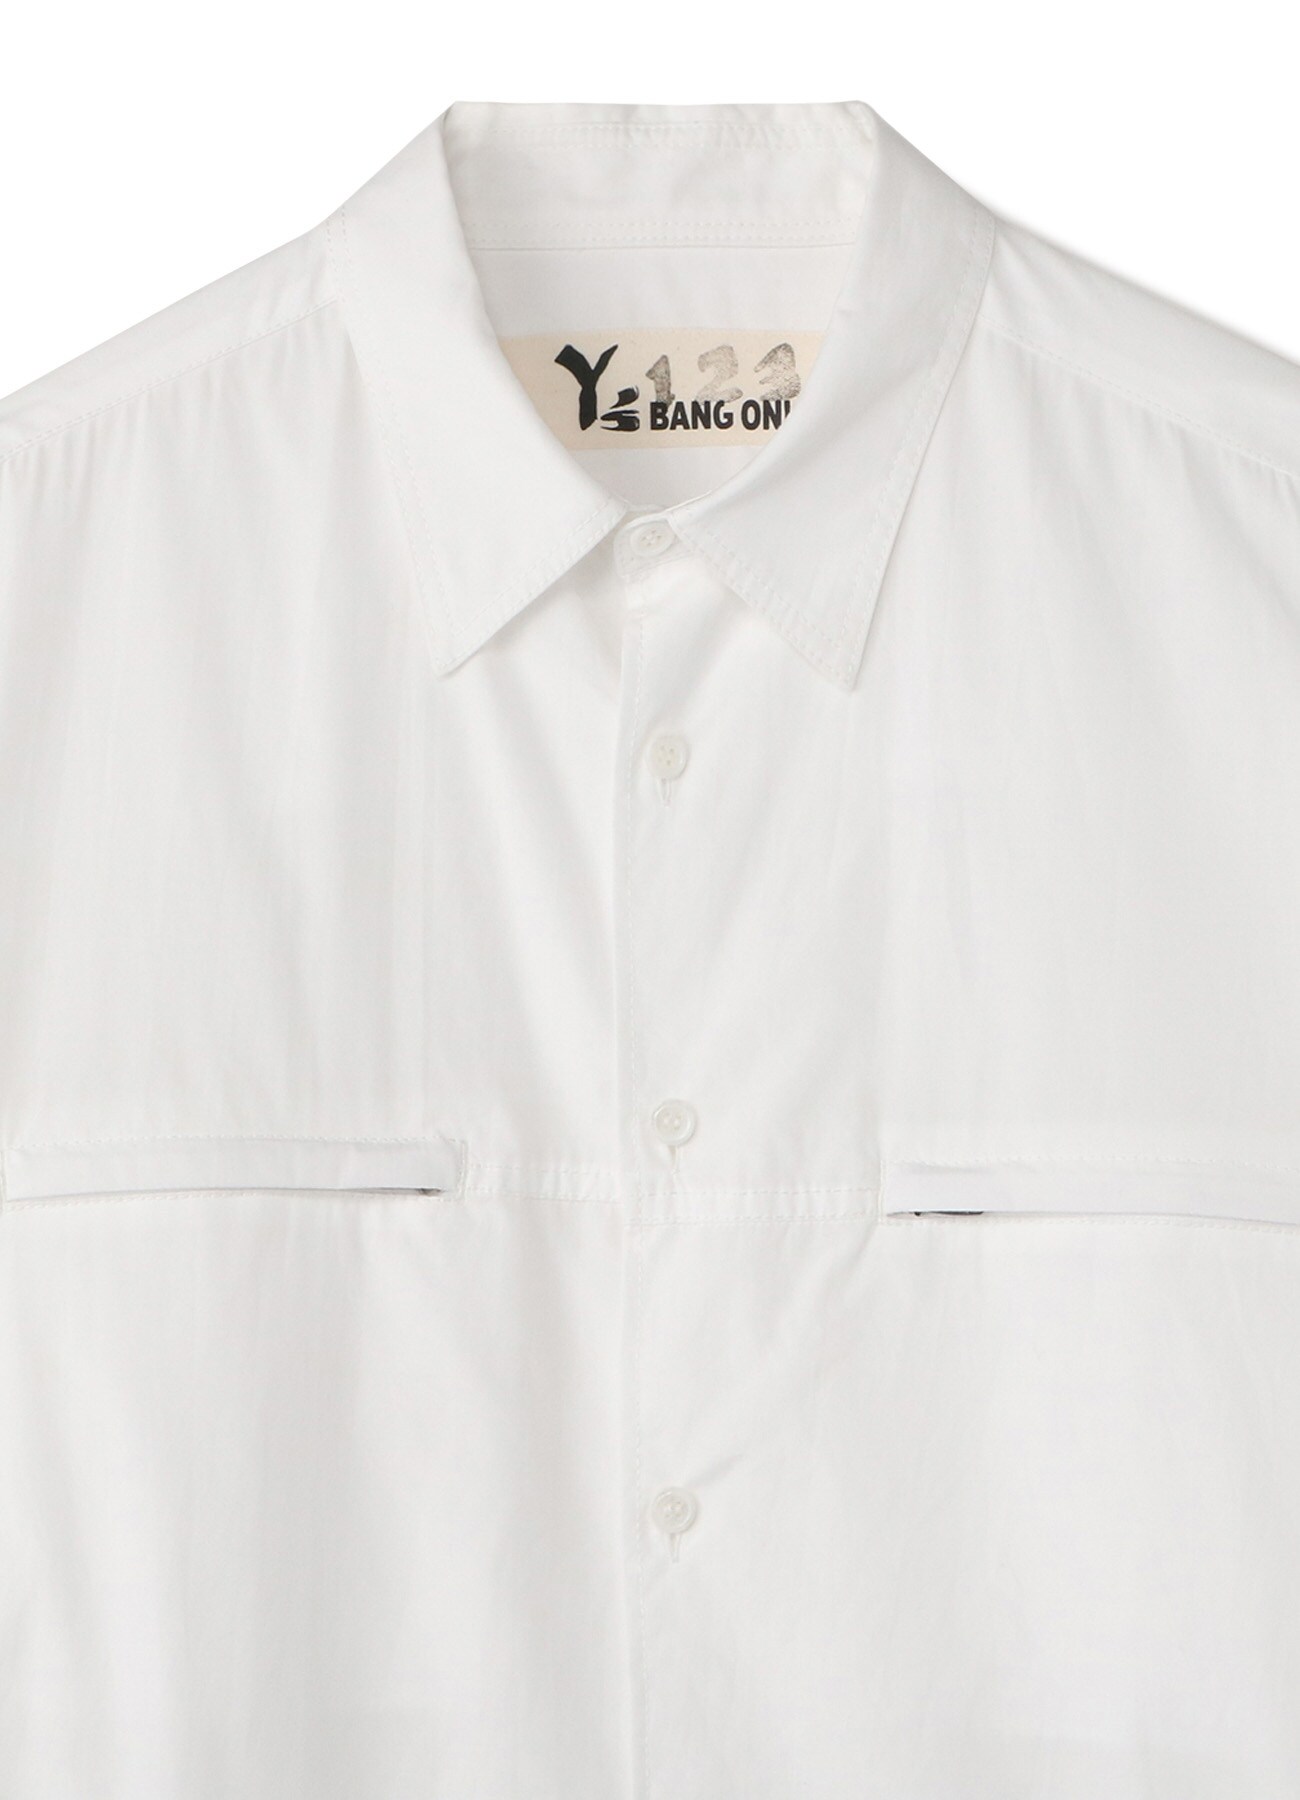 Y's BANG ON!No.123 Zipper pocket-shirts Cotton broad